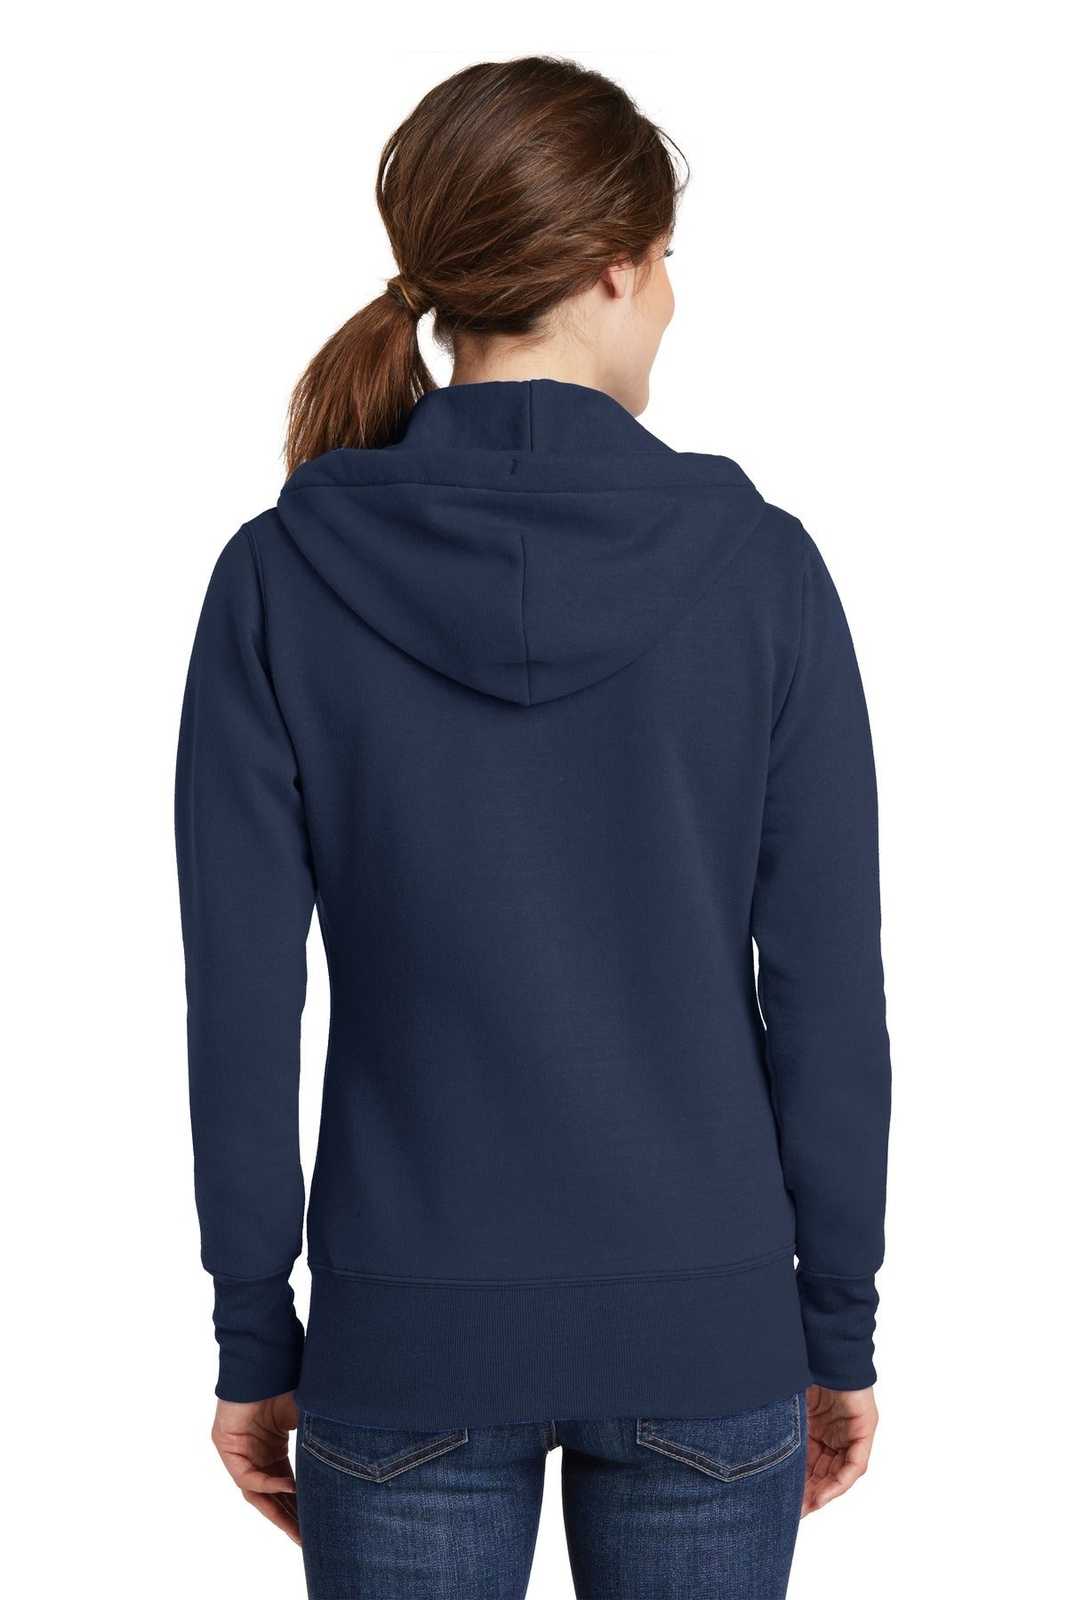 Port &amp; Company LPC78ZH Ladies Core Fleece Full-Zip Hooded Sweatshirt - Navy - HIT a Double - 2